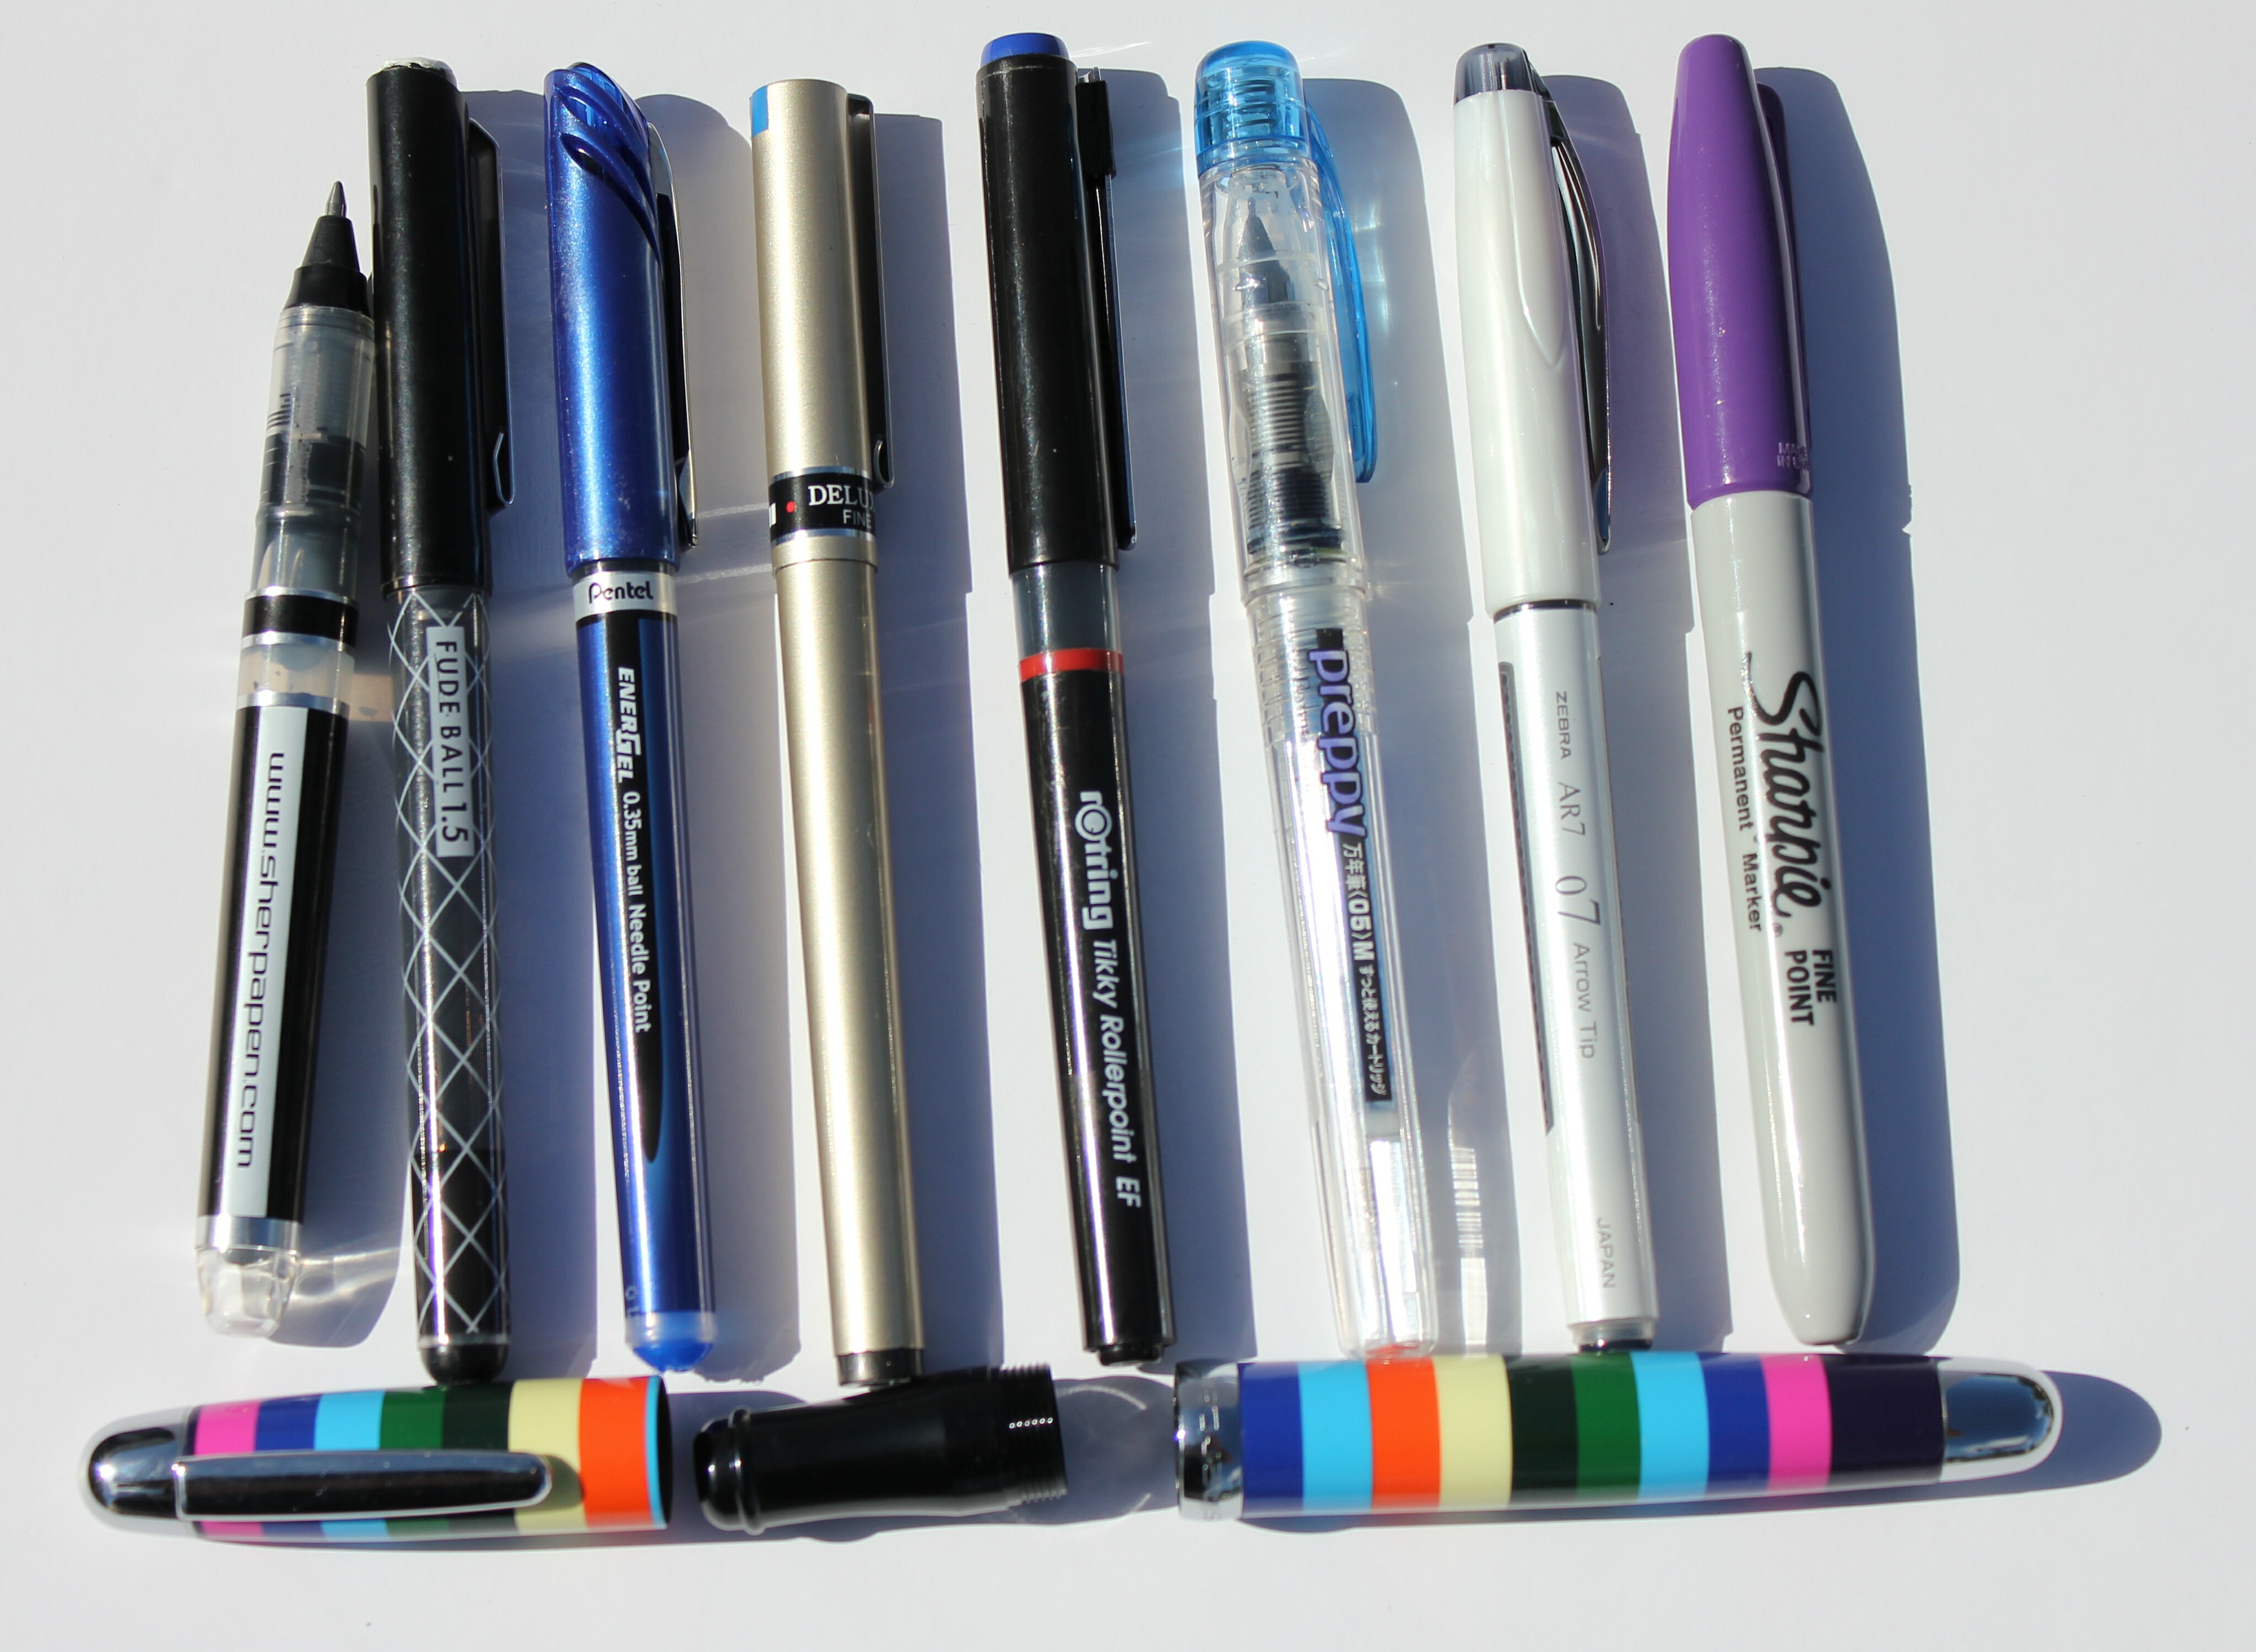 Sherpa Pen Review - My Pen Needs InkMy Pen Needs Ink